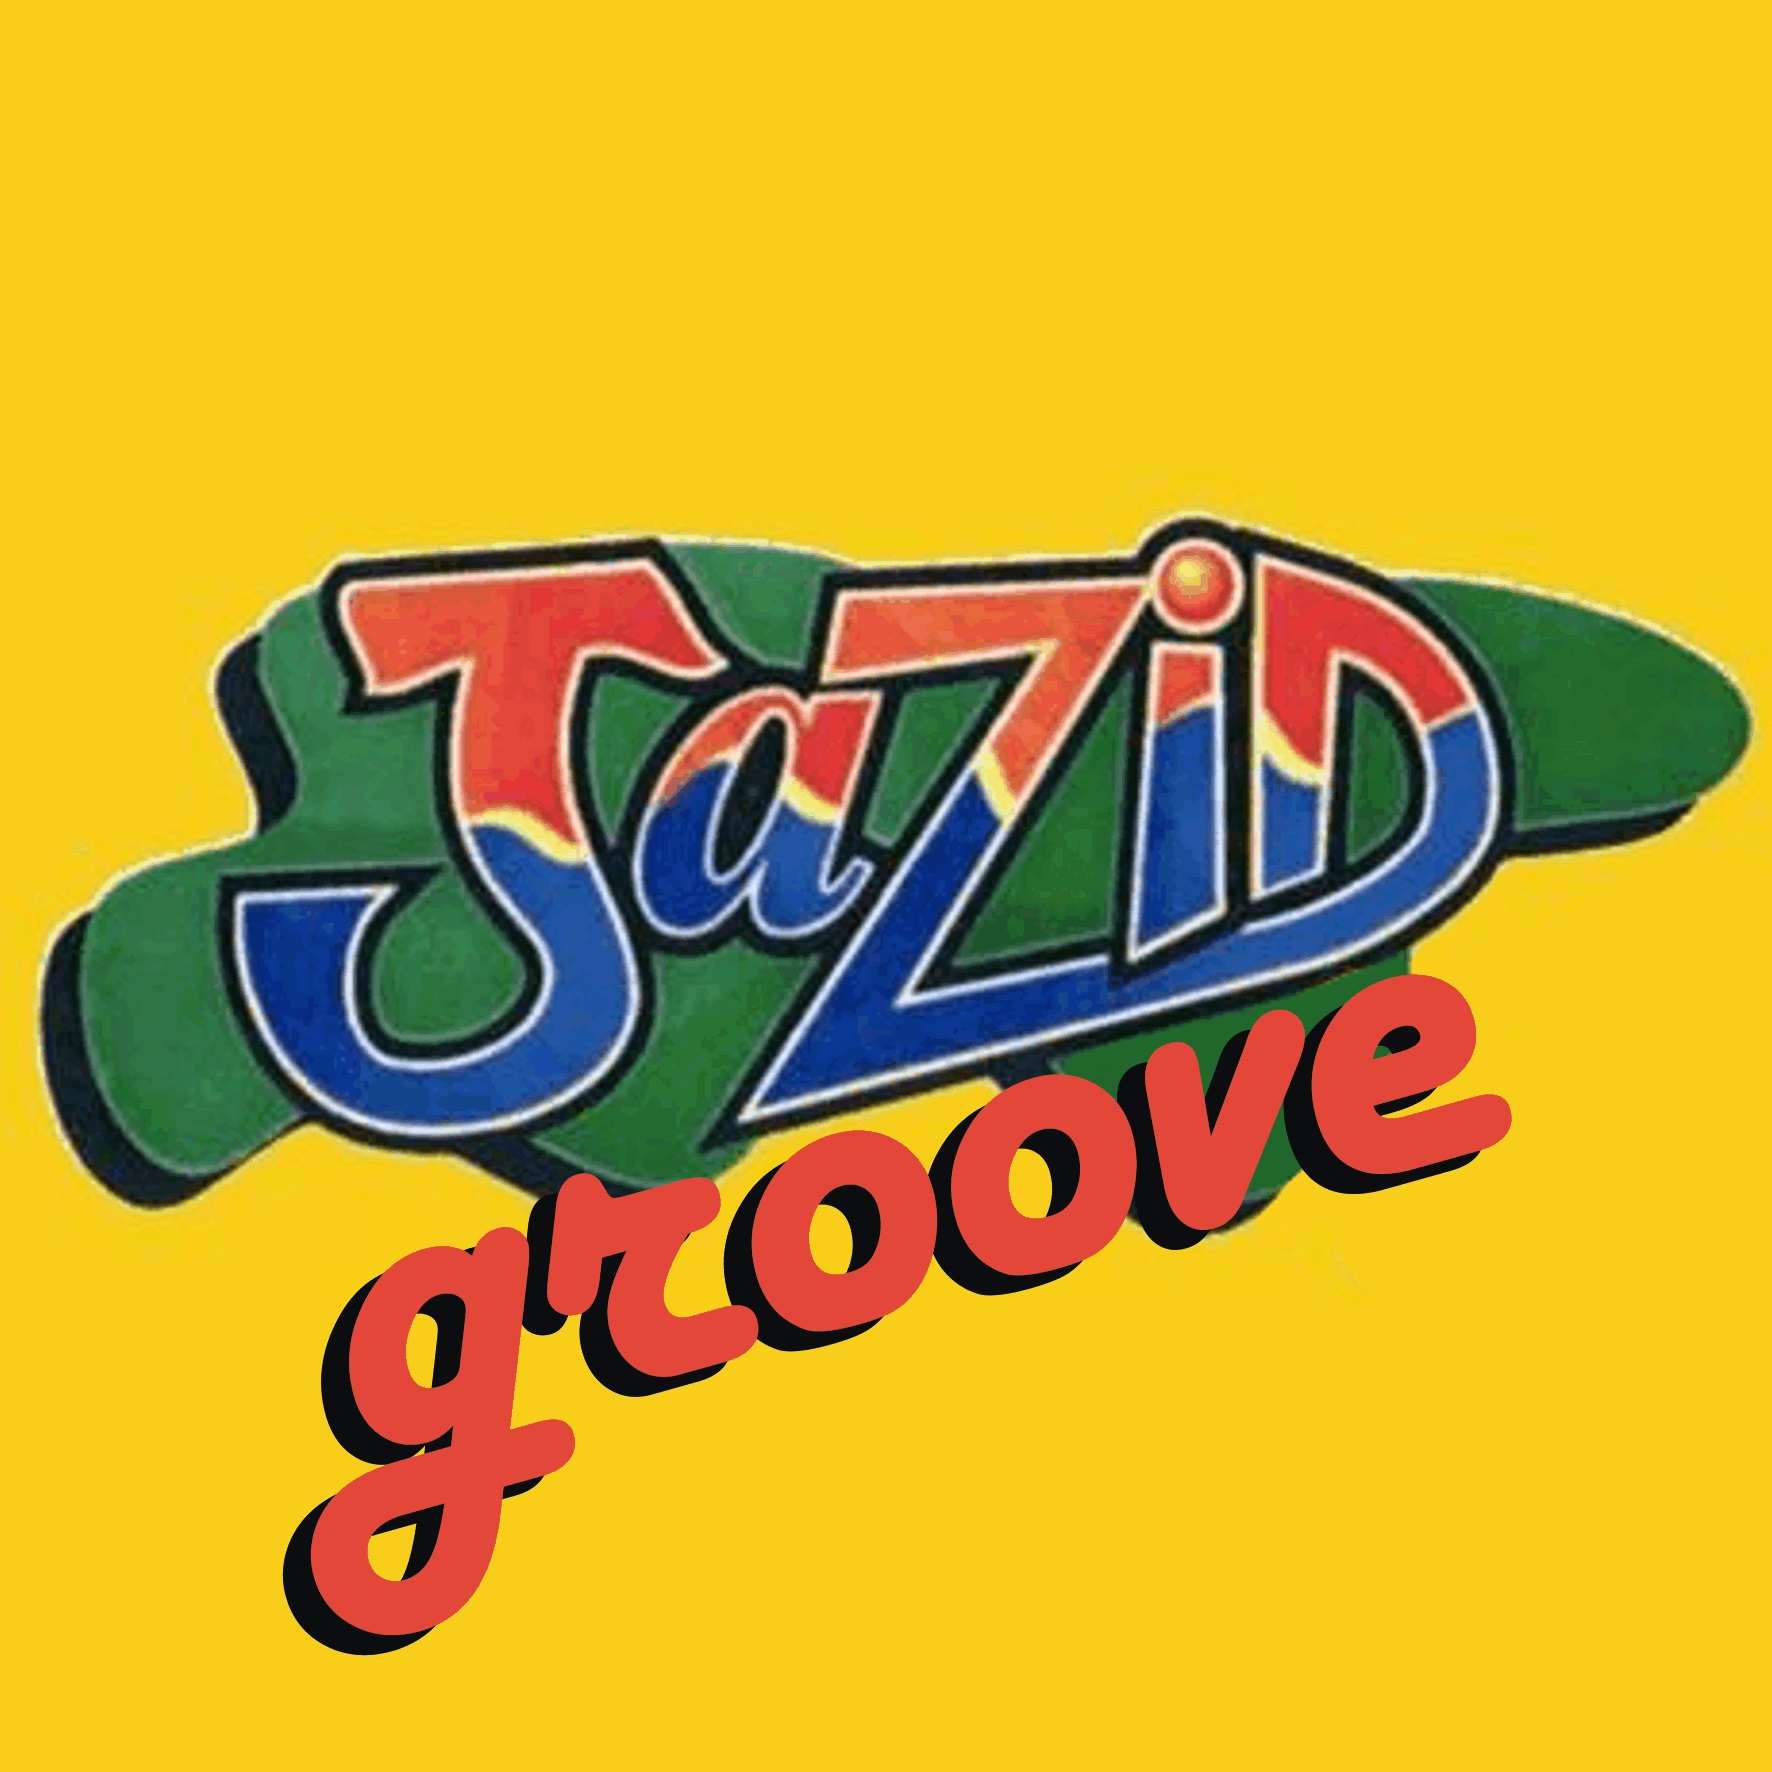 Jazid Groove 16